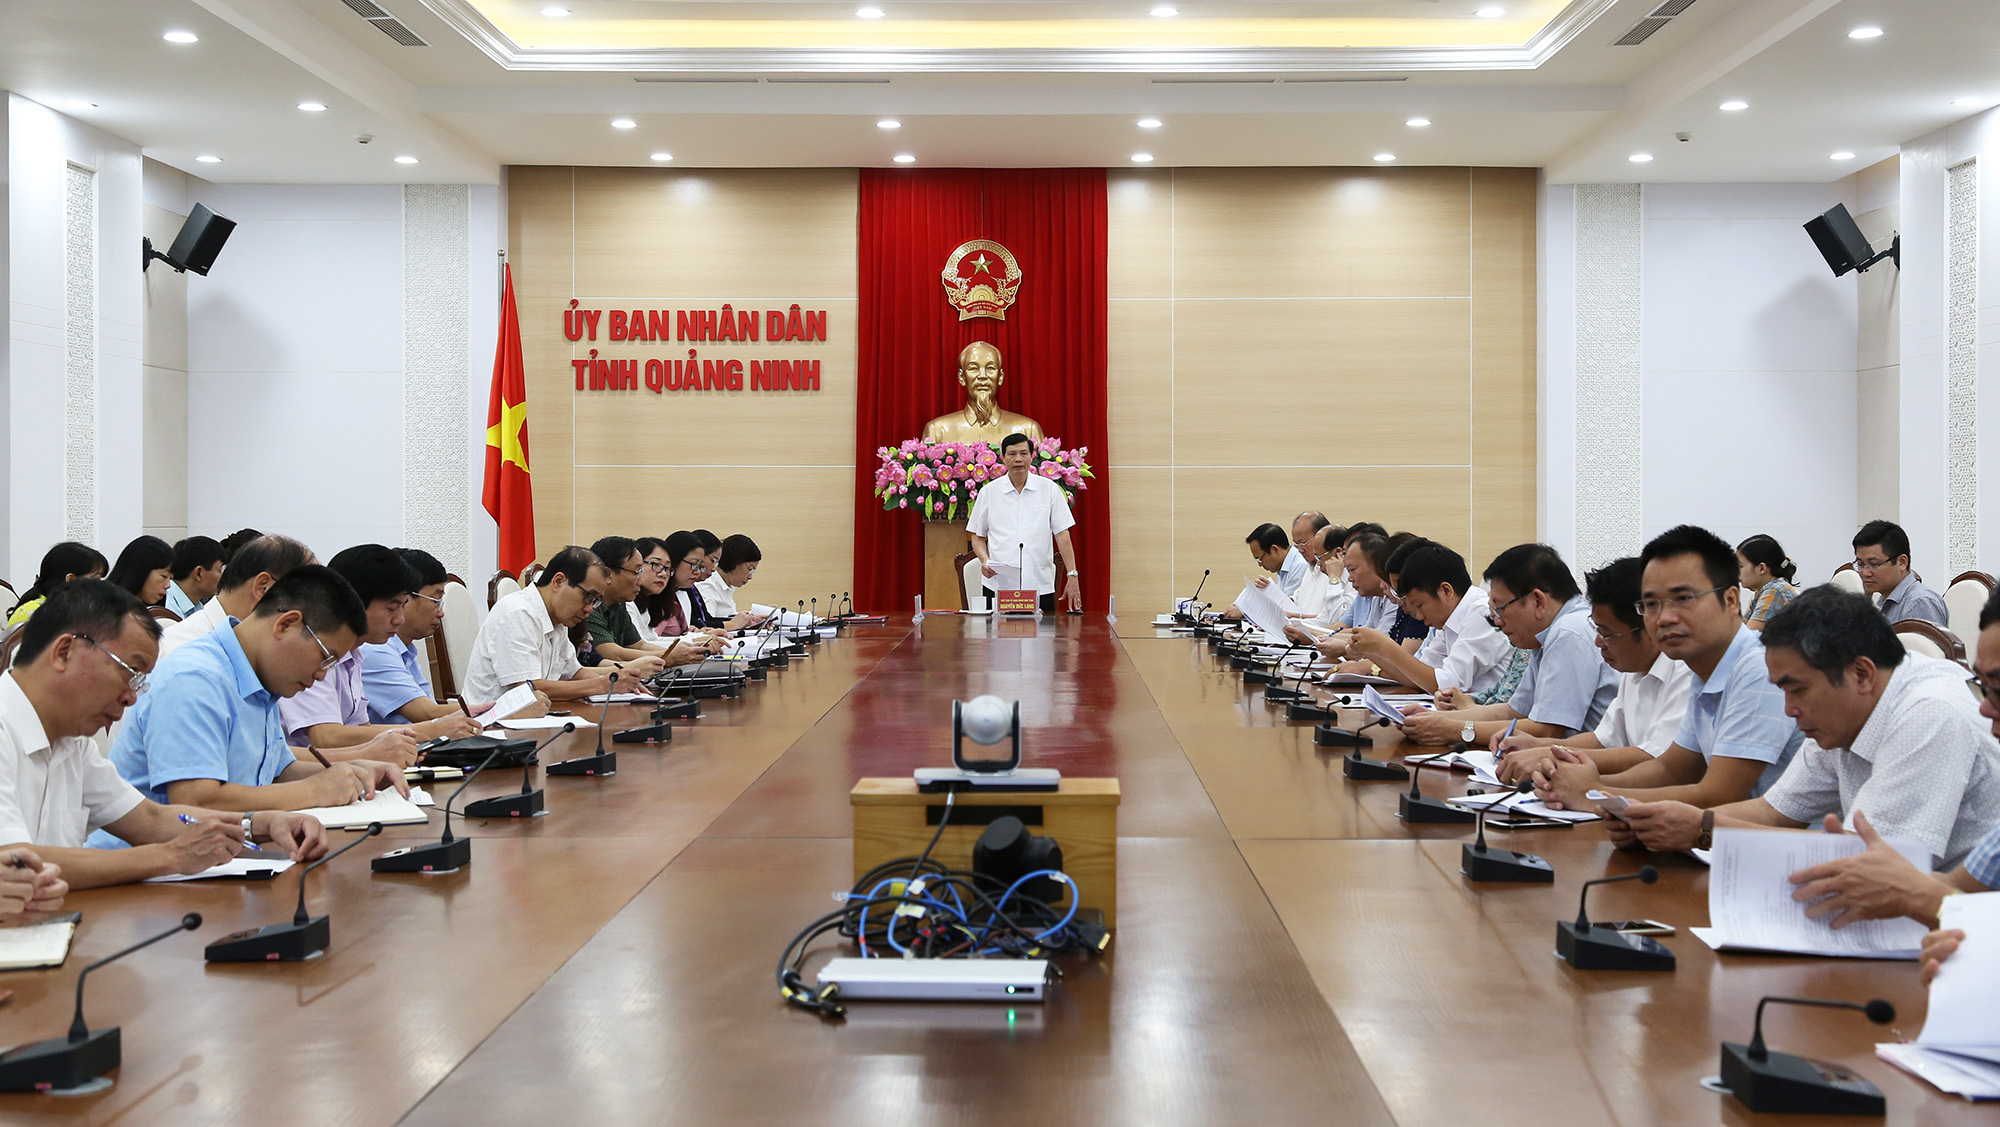 Đồng chí Nguyễn Đức Long, Phó Bí thư Tỉnh ủy, Chủ tịch UBND tỉnh, phát biểu chỉ đạo hội nghị.